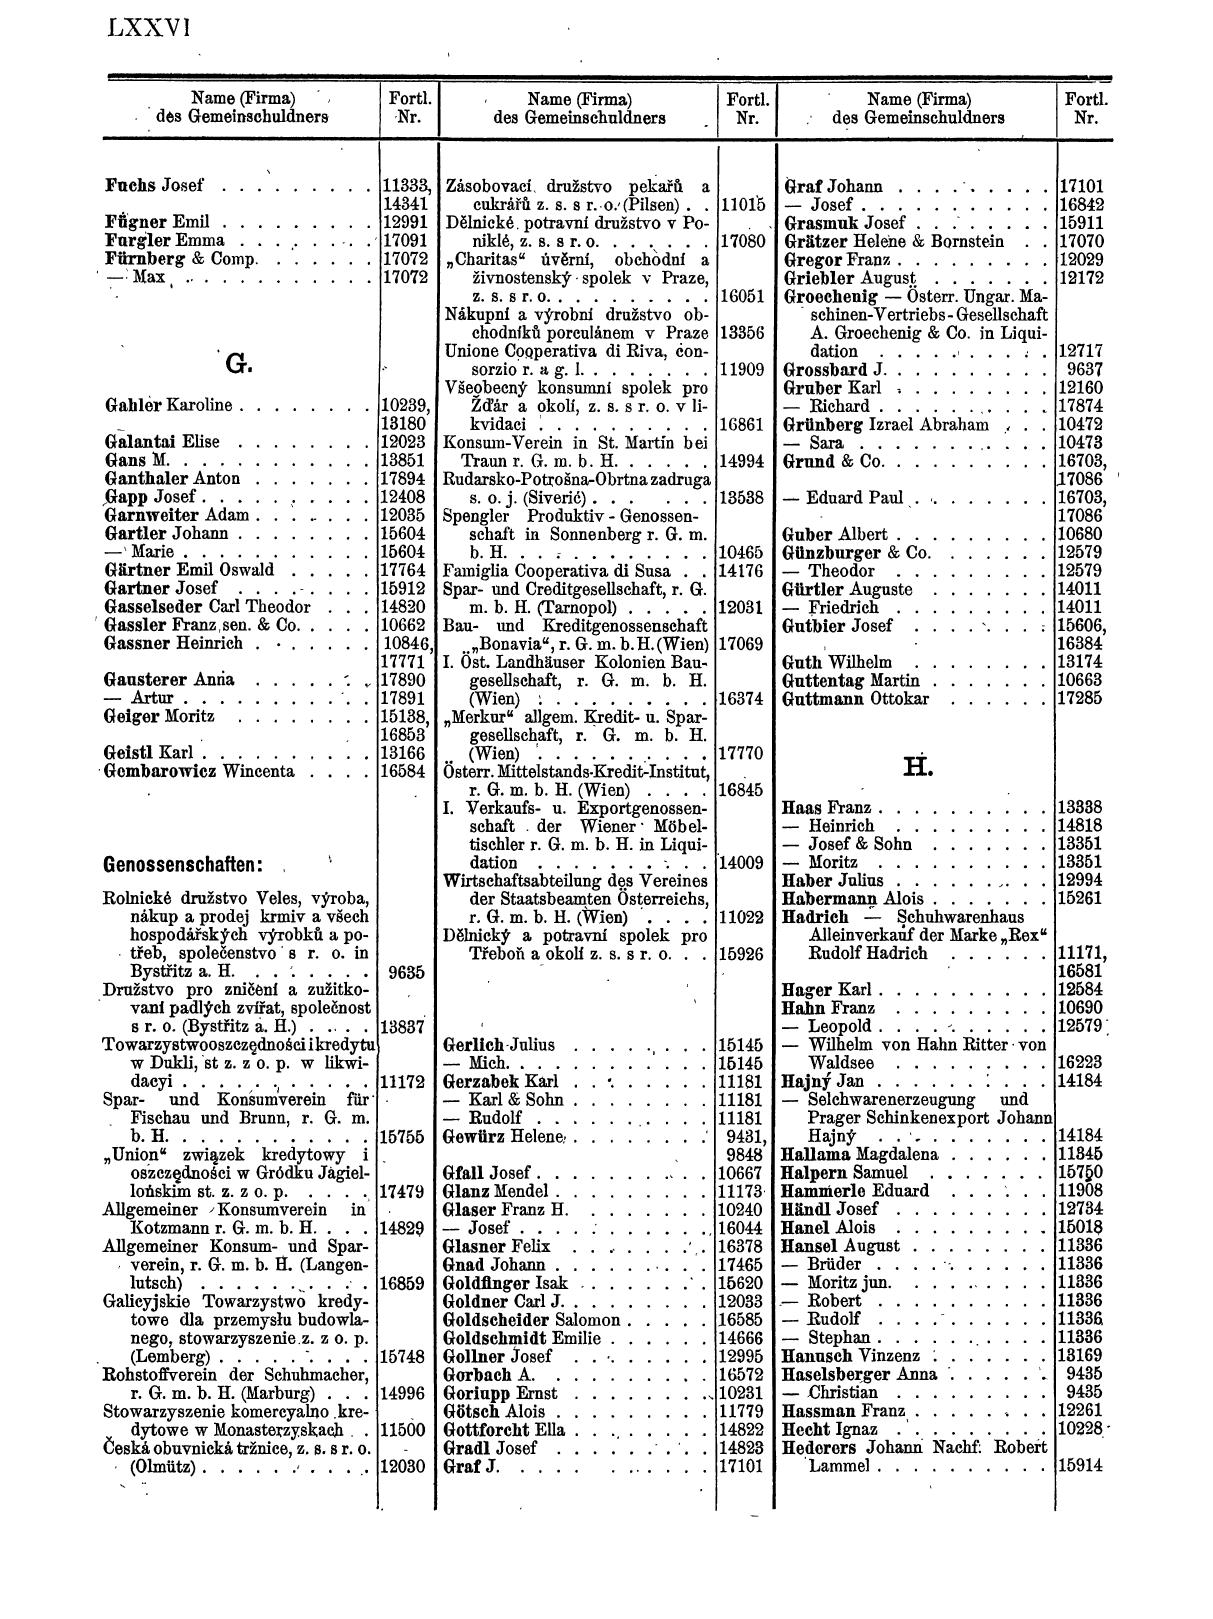 Zentralblatt für die Eintragungen in das Handelsregister 1913, Teil 2 - Seite 80